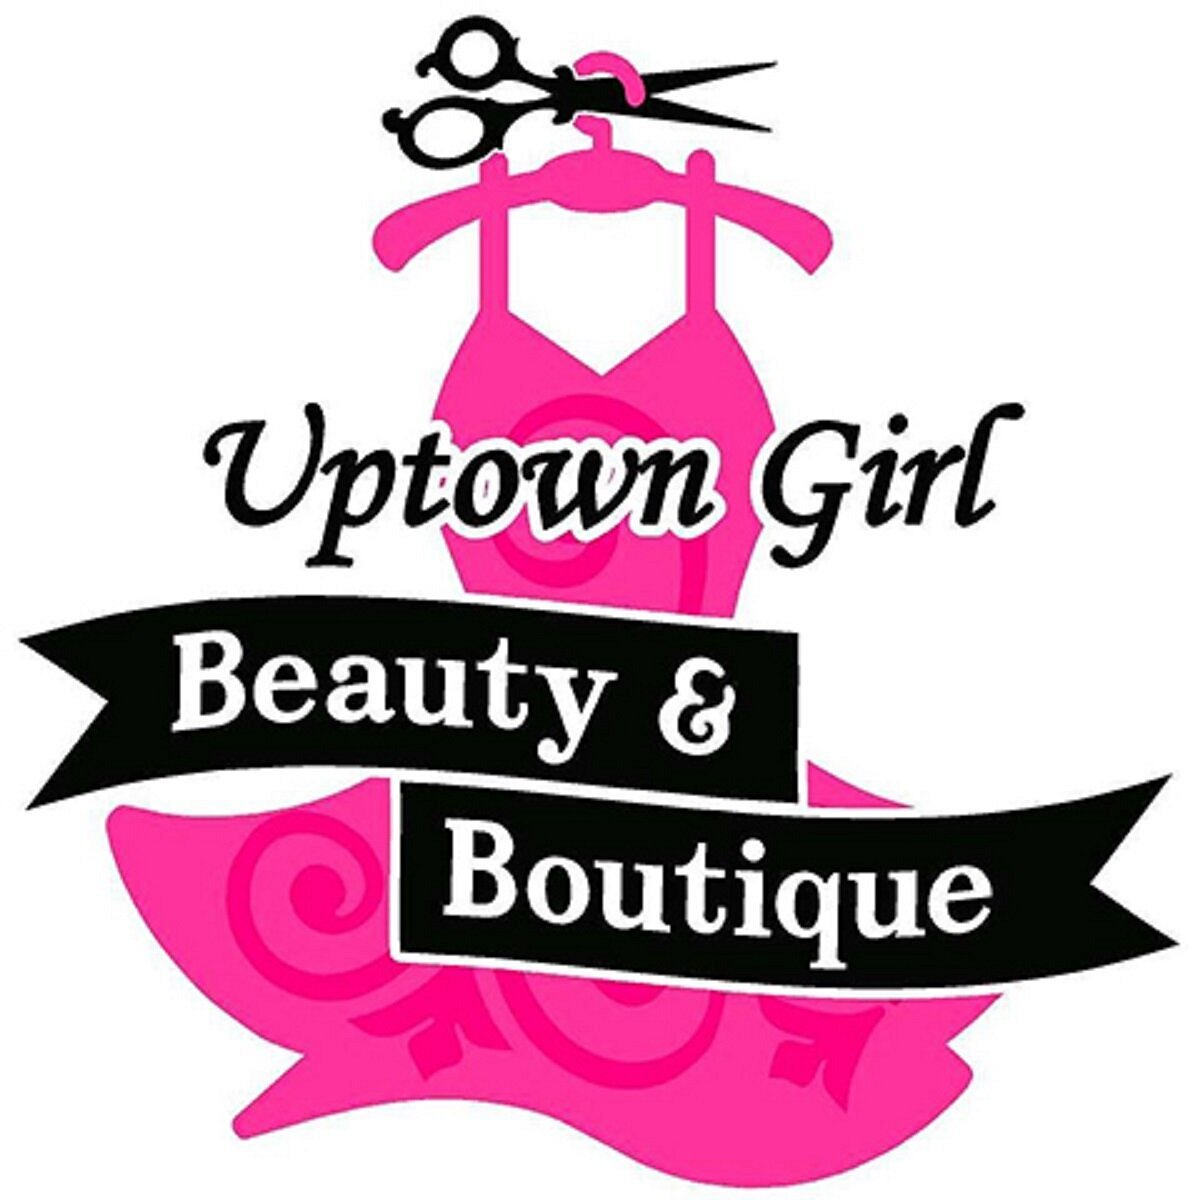 Uptown Girl Beauty & Boutique (Kaukauna, WI): Hours, Address - Tripadvisor